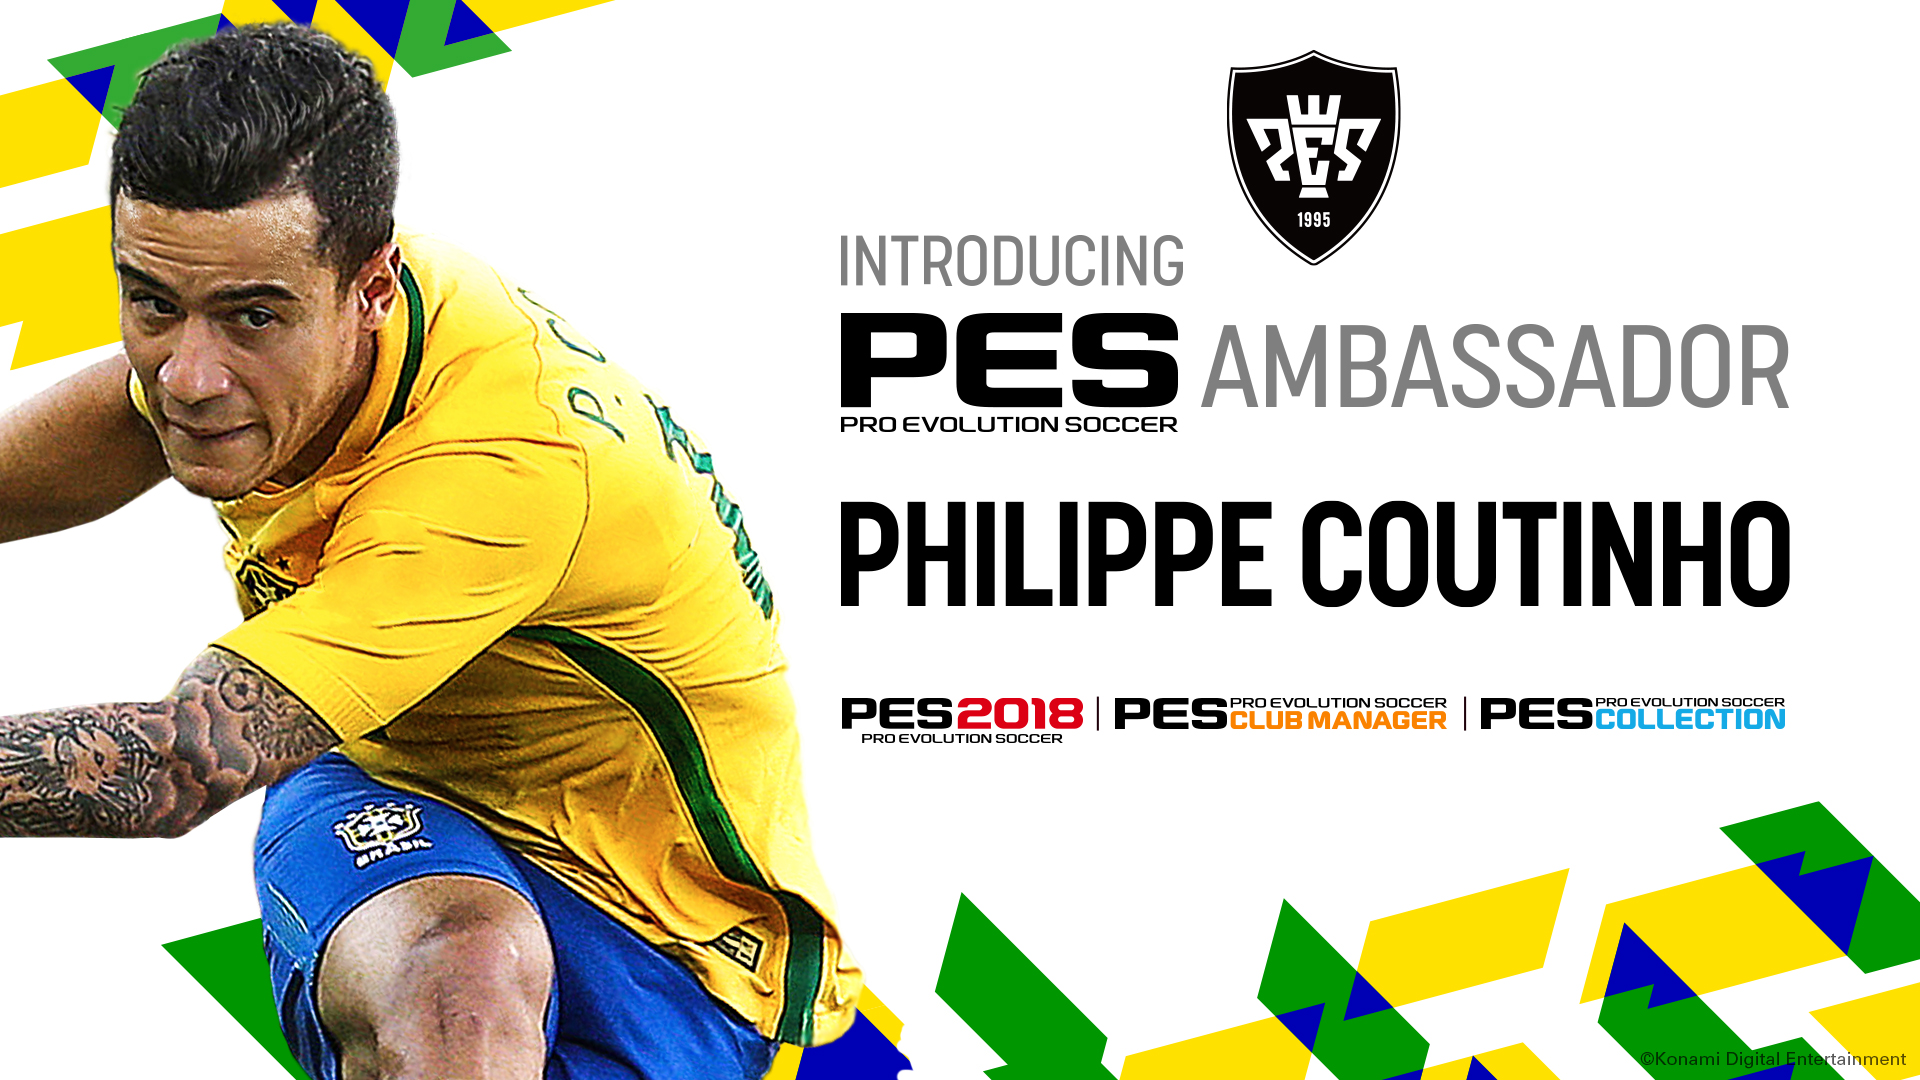 Coutinho annunciato come ambasciatore della serie PES!